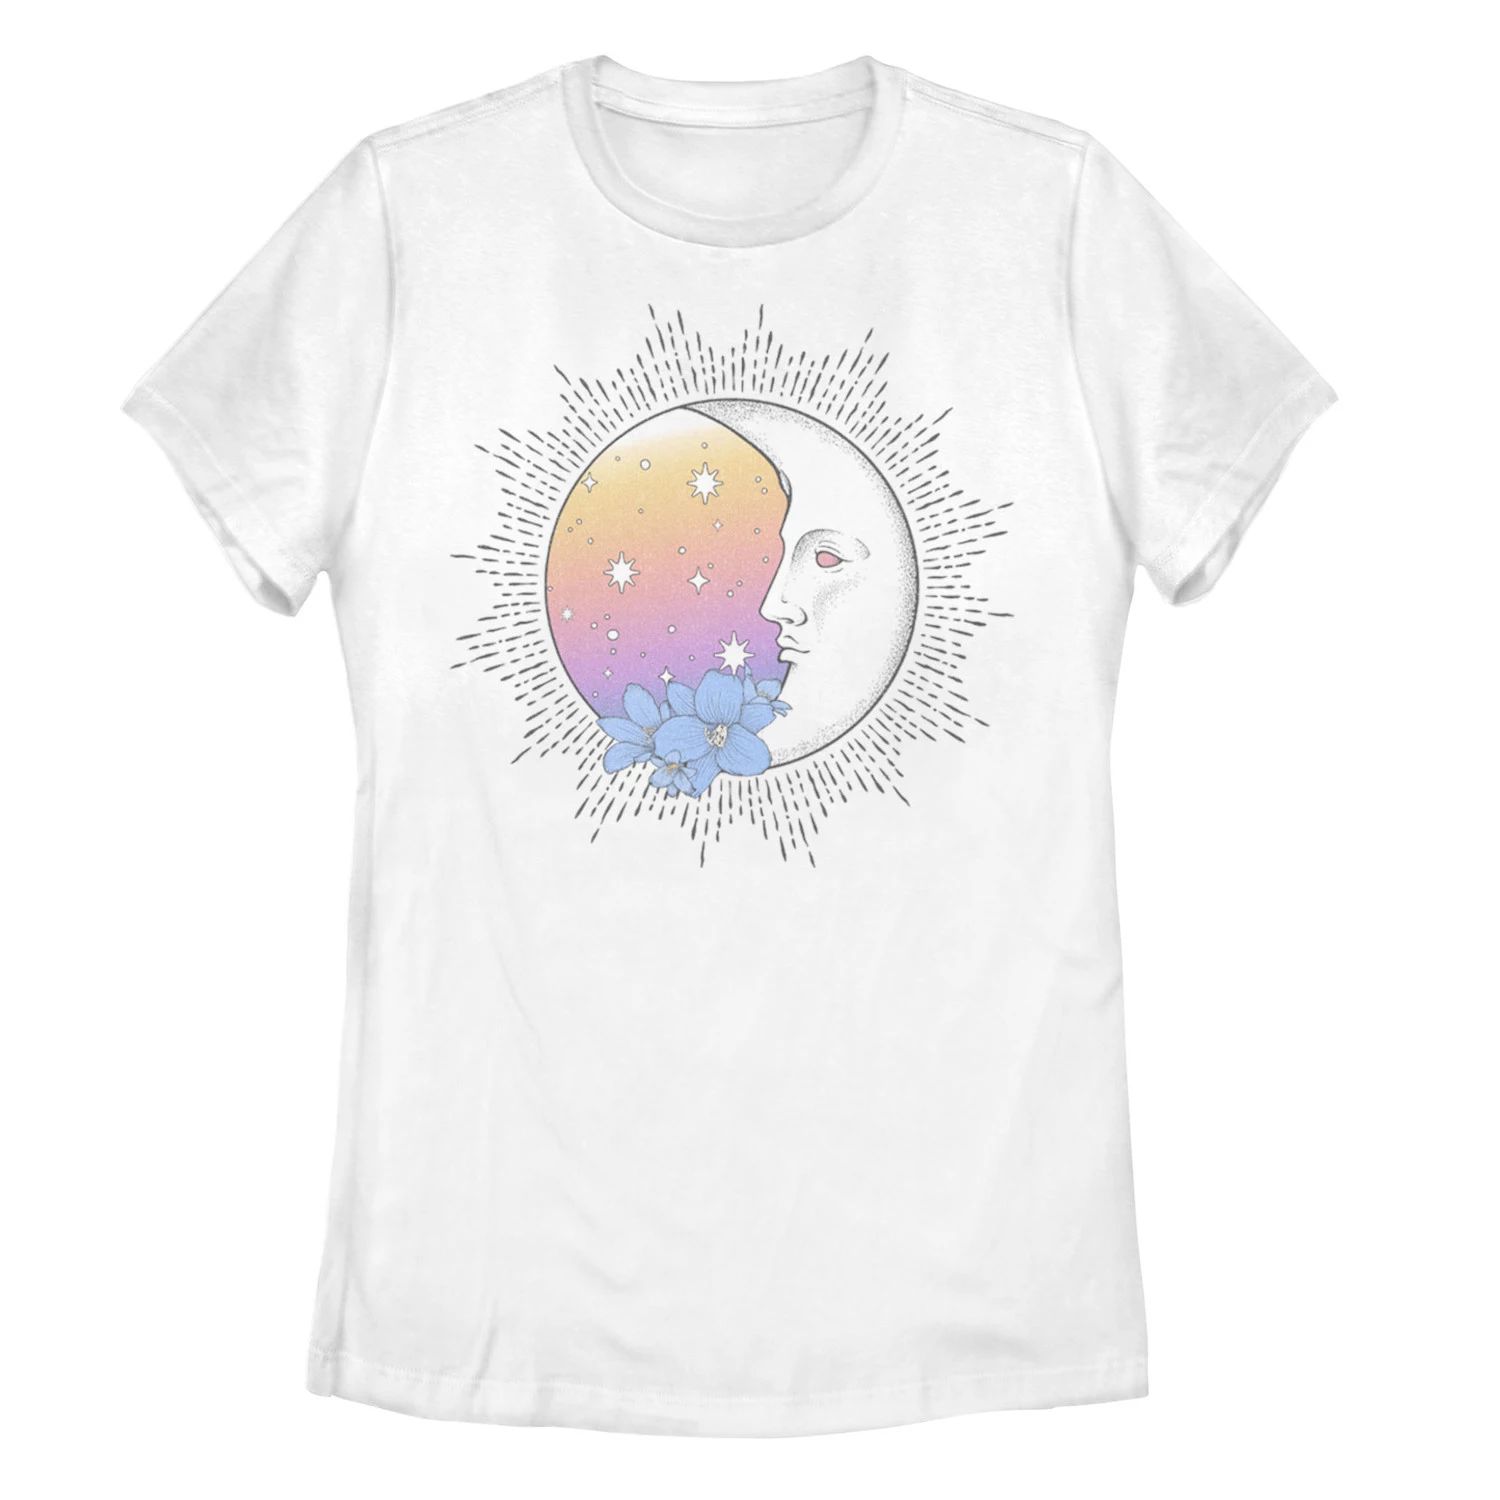 цена Детская футболка с цветочным градиентом и рисунком лунного профиля, белый